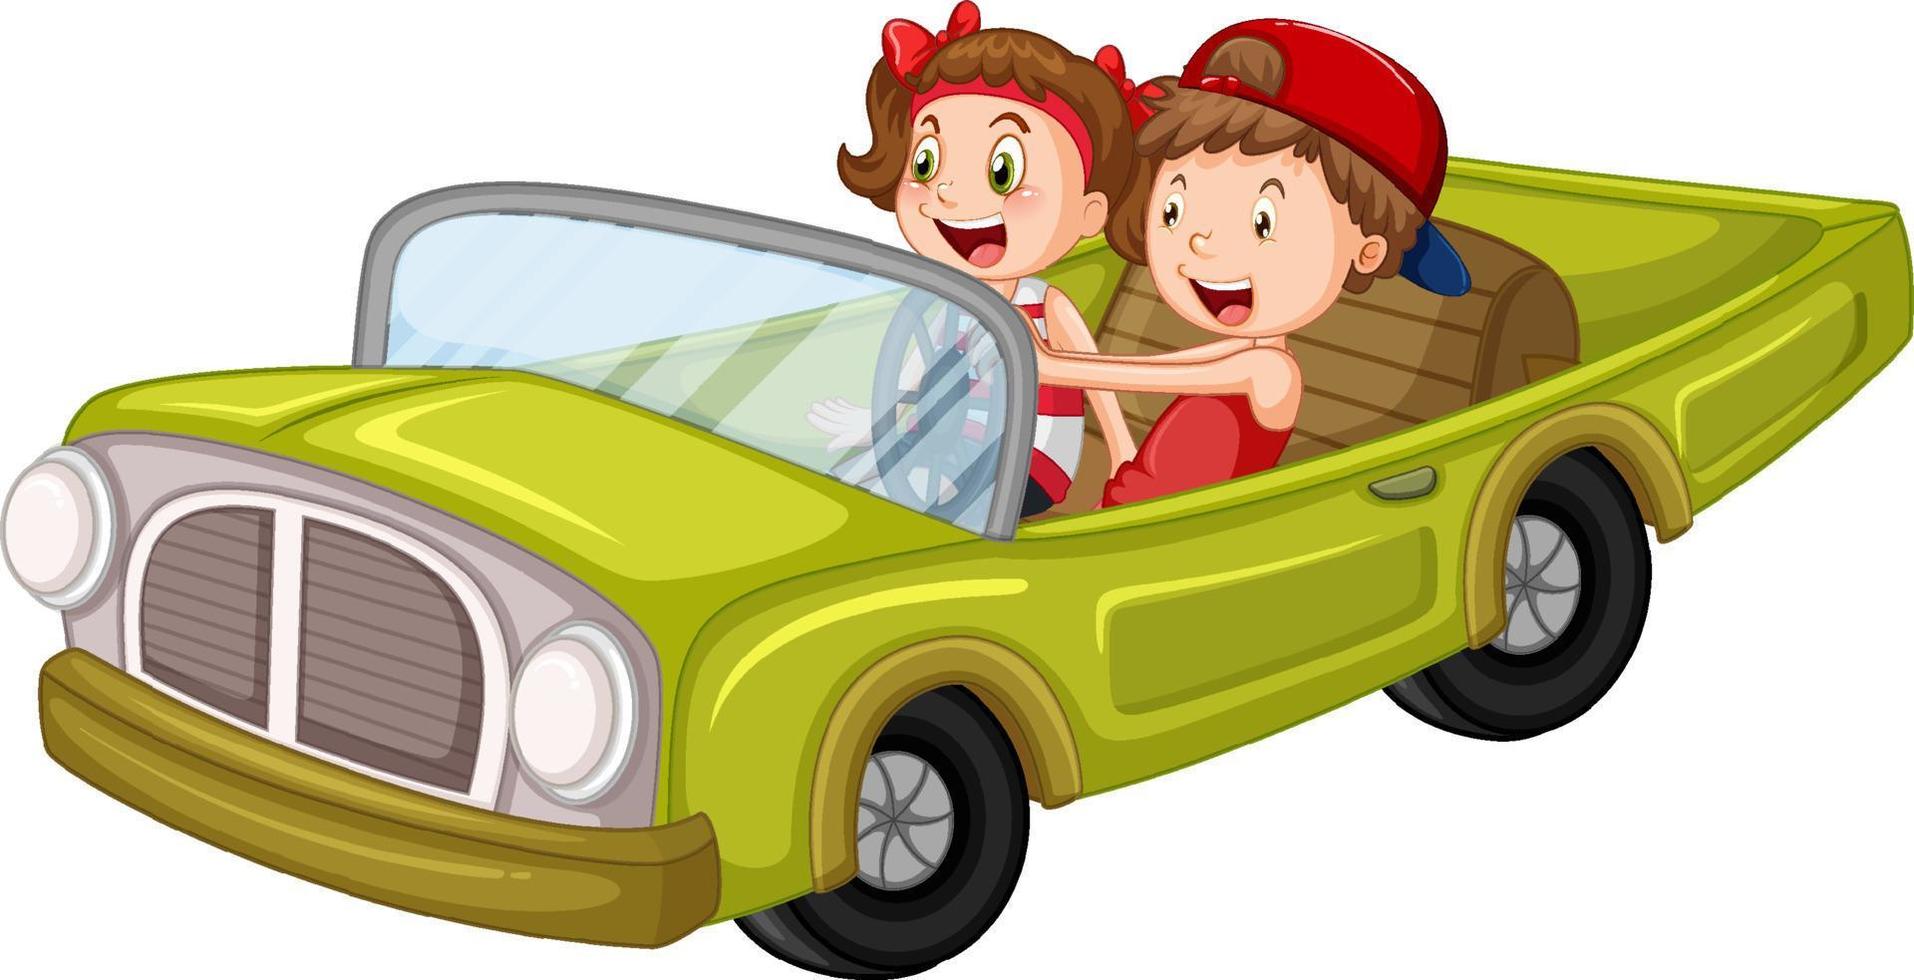 bambini in auto d'epoca nel design dei cartoni animati vettore